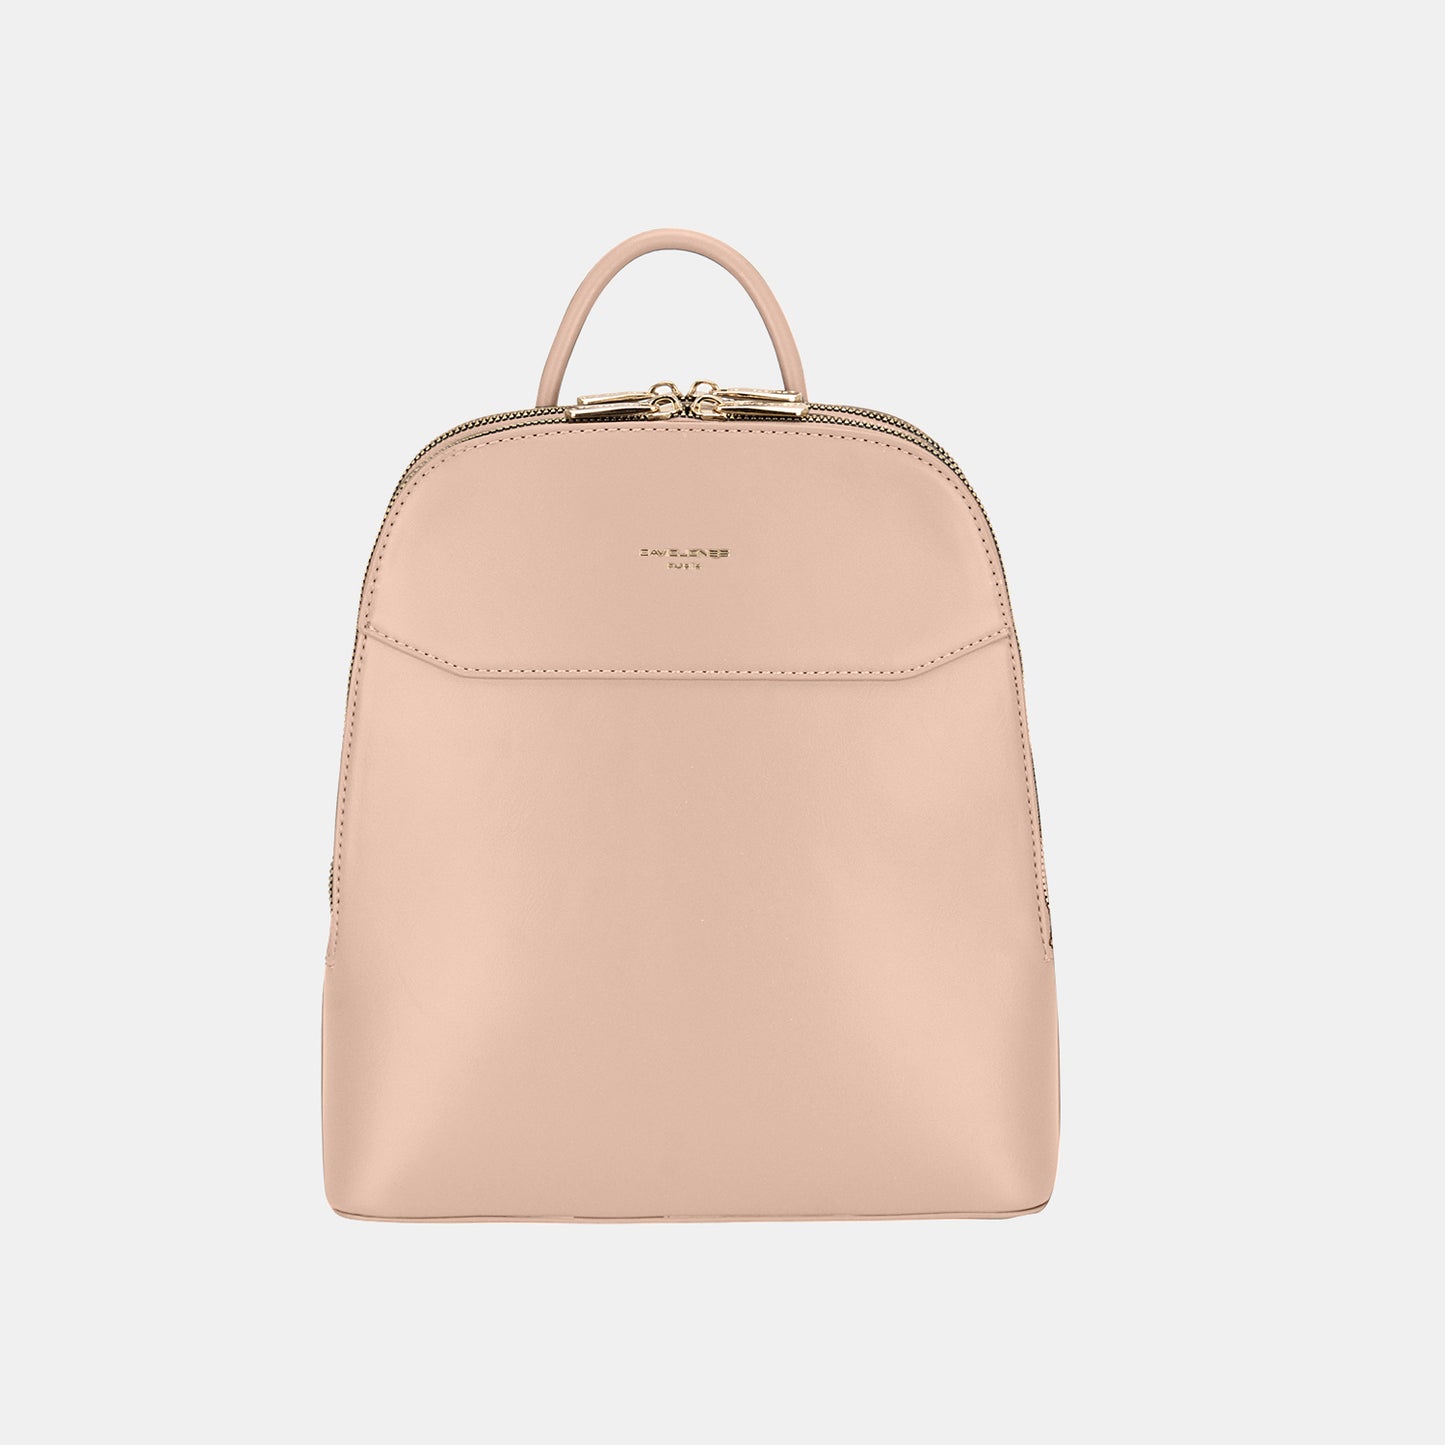 PU Leather Adjustable Straps Backpack Bag